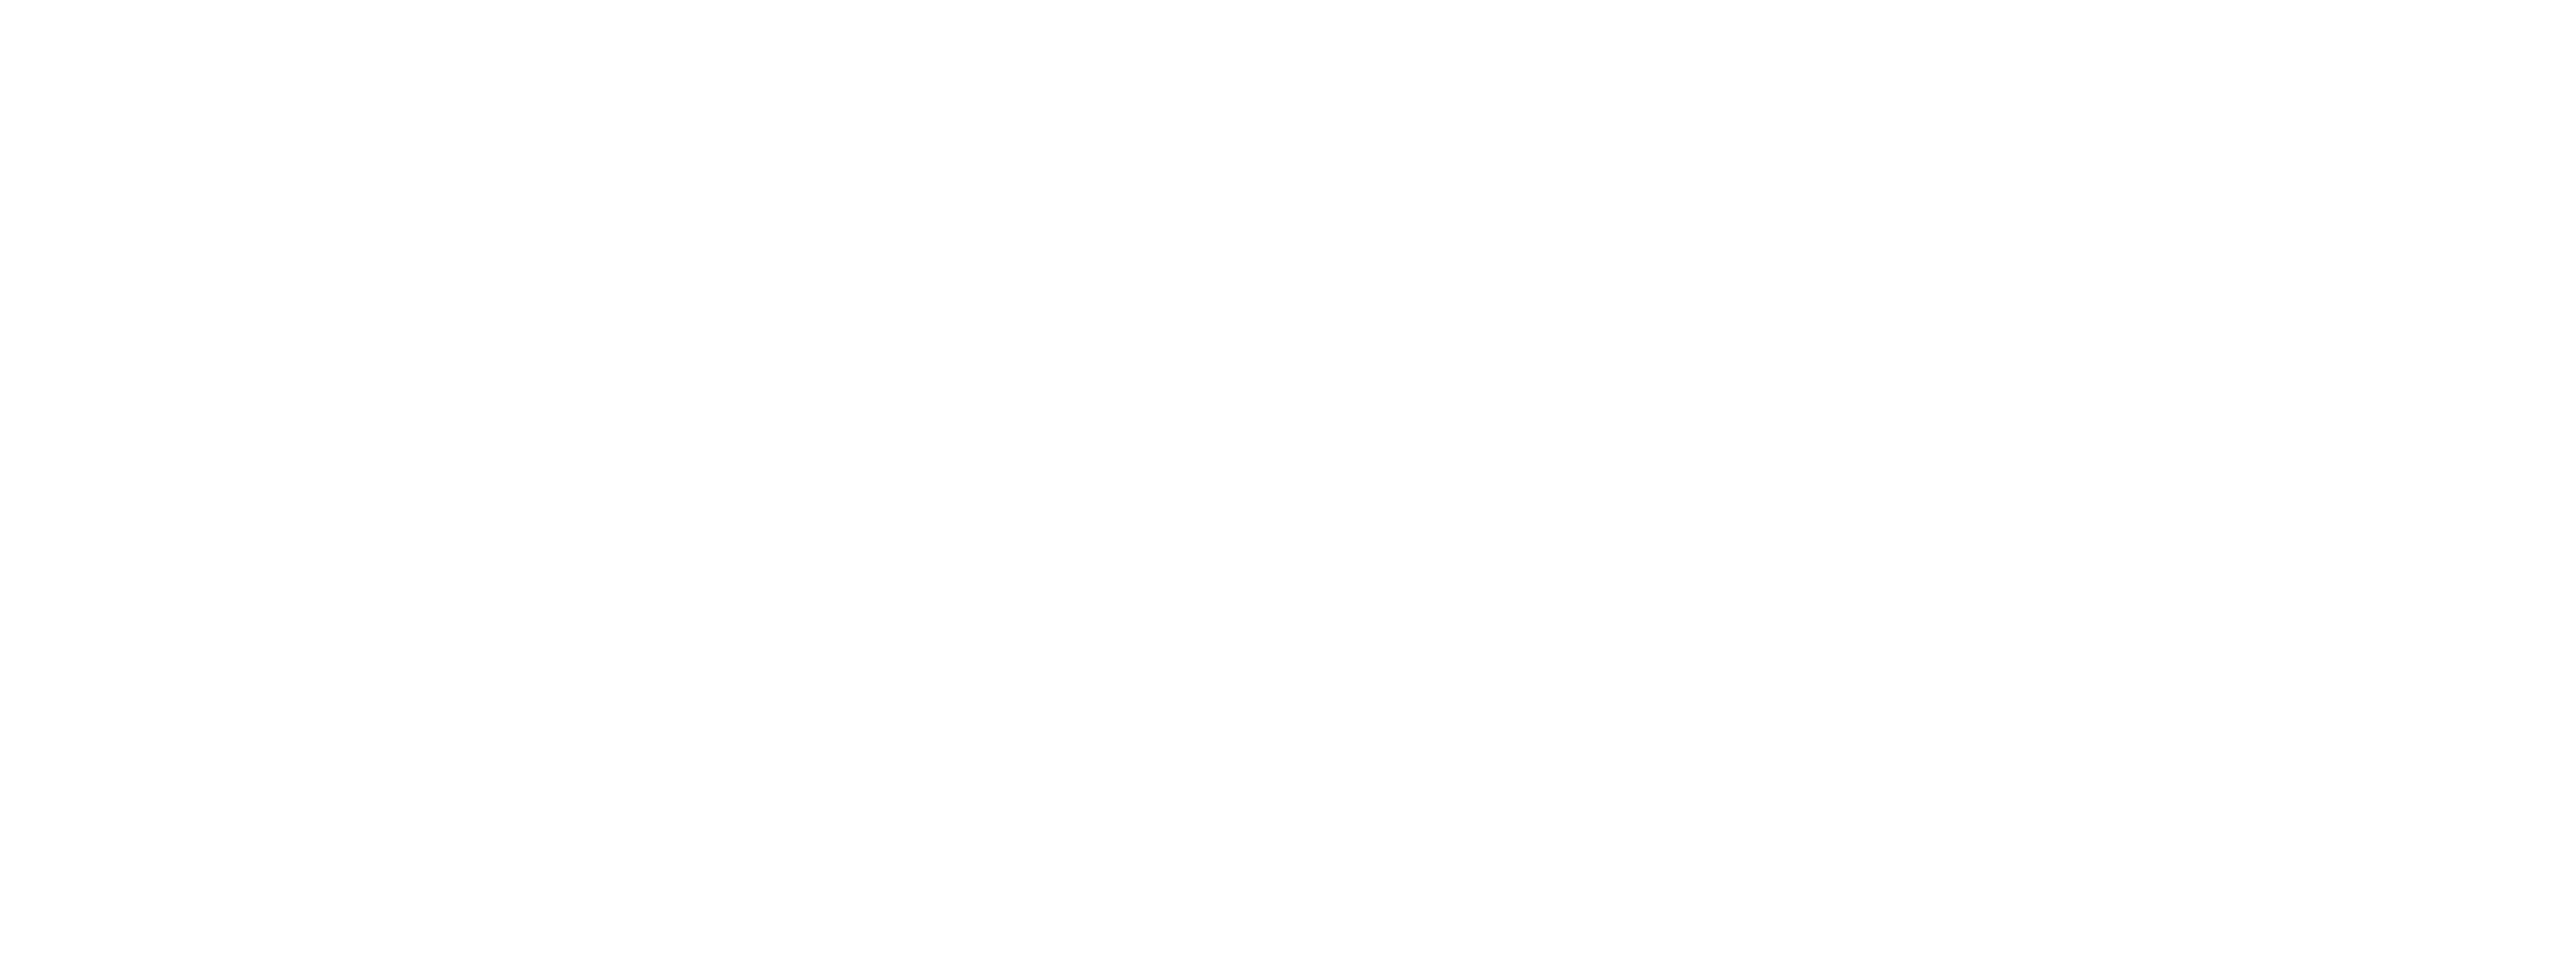 Colegio de Arquitectos Distrito 1 Santa Fe